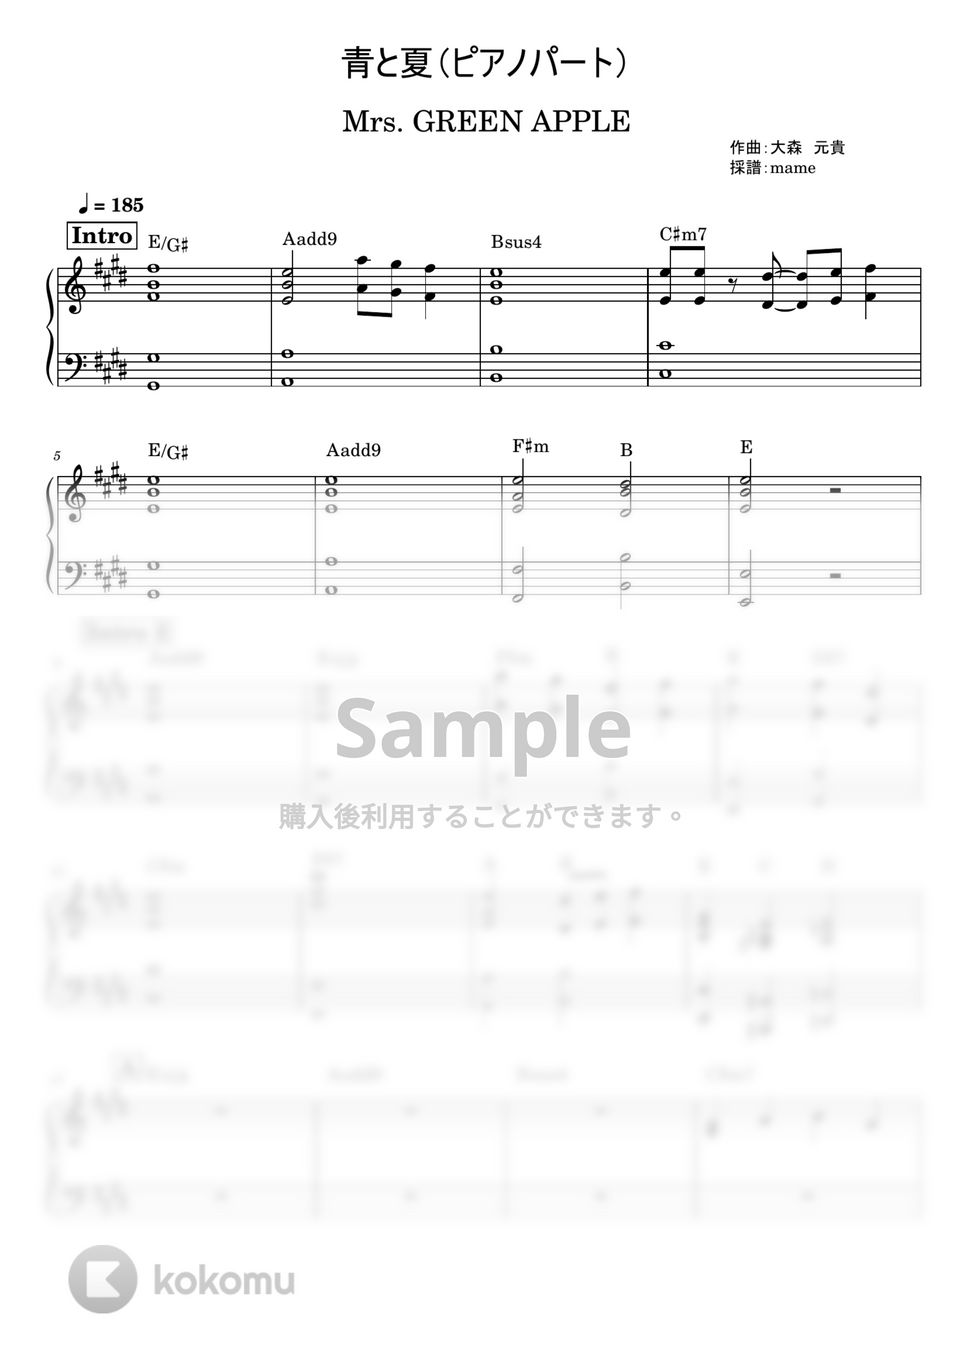 Mrs. GREEN APPLE - 青と夏 (ピアノパート) by mame